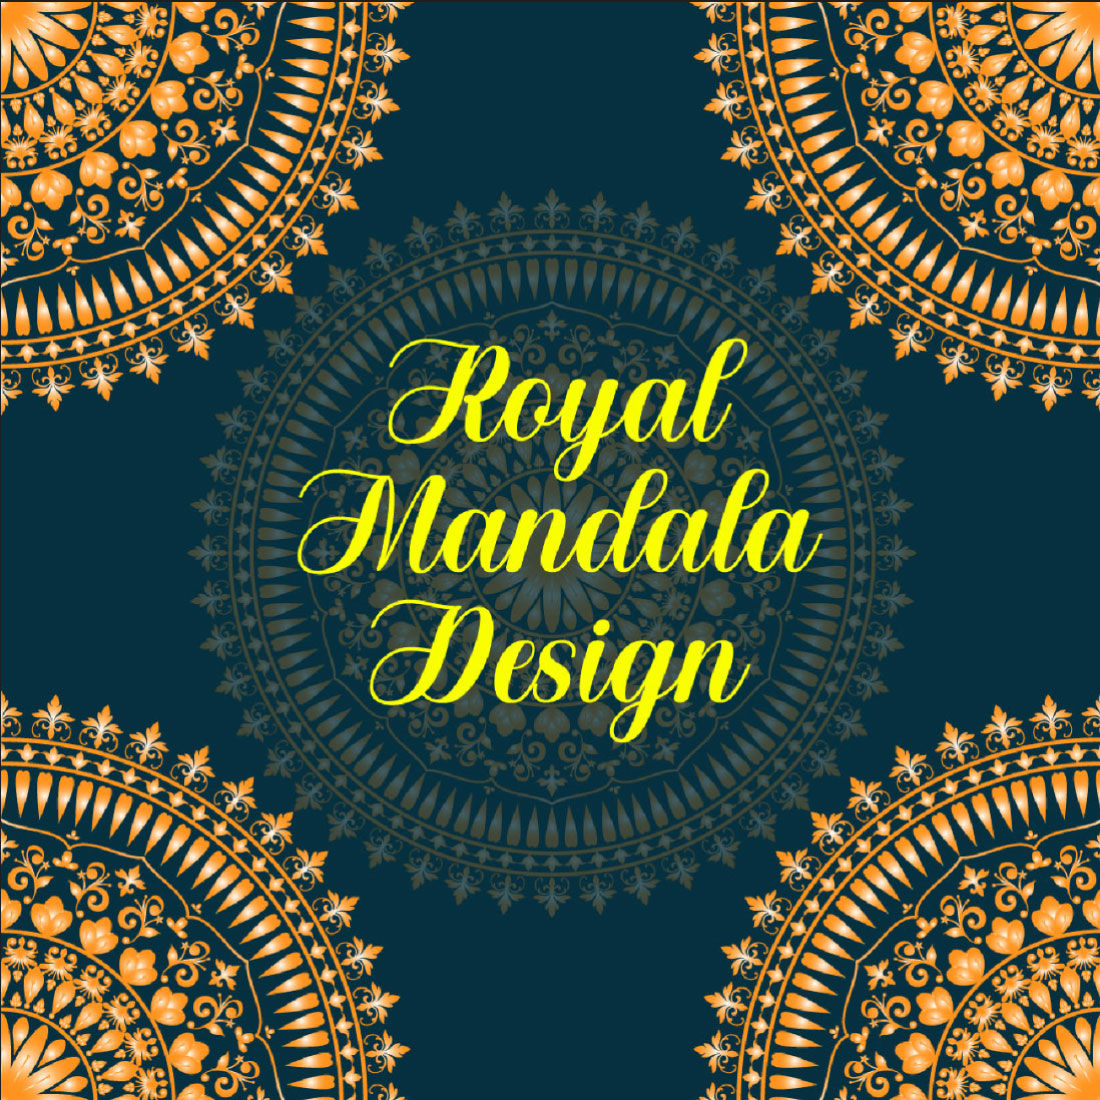 Exclusive Royal Mandala Design preview image.